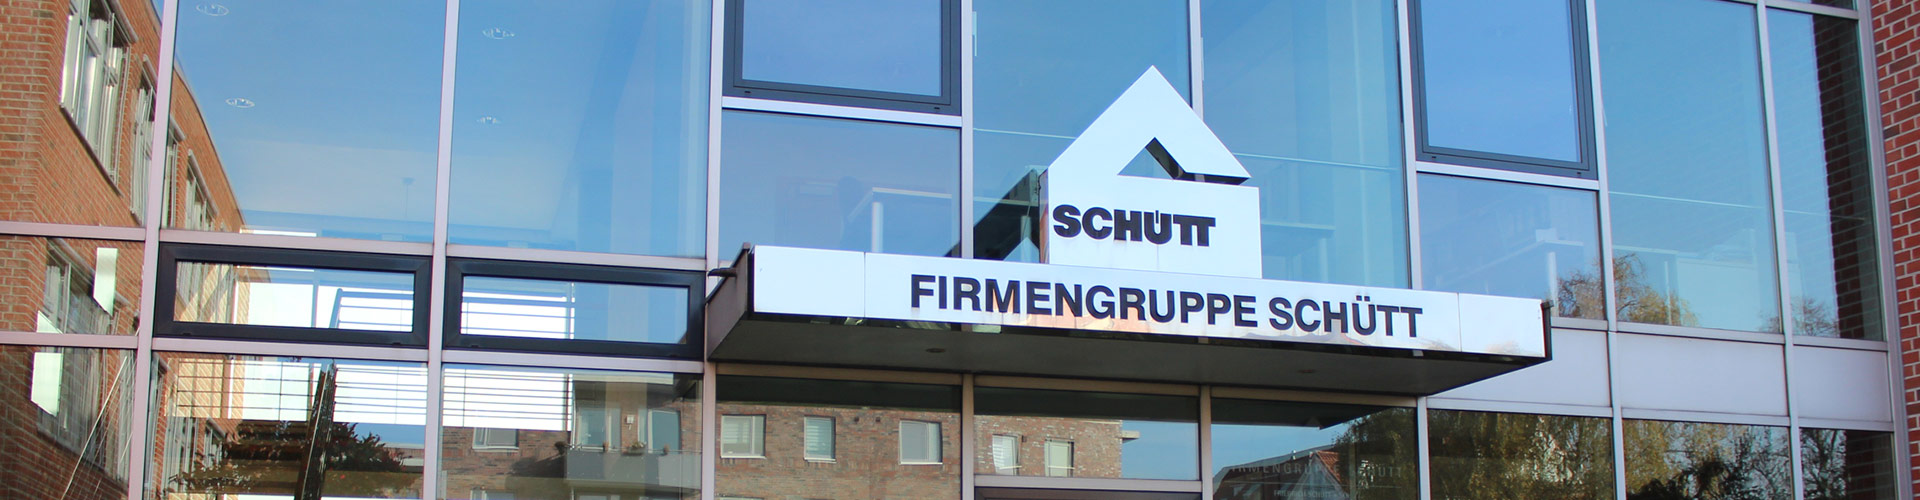 Firmengruppe Schütt